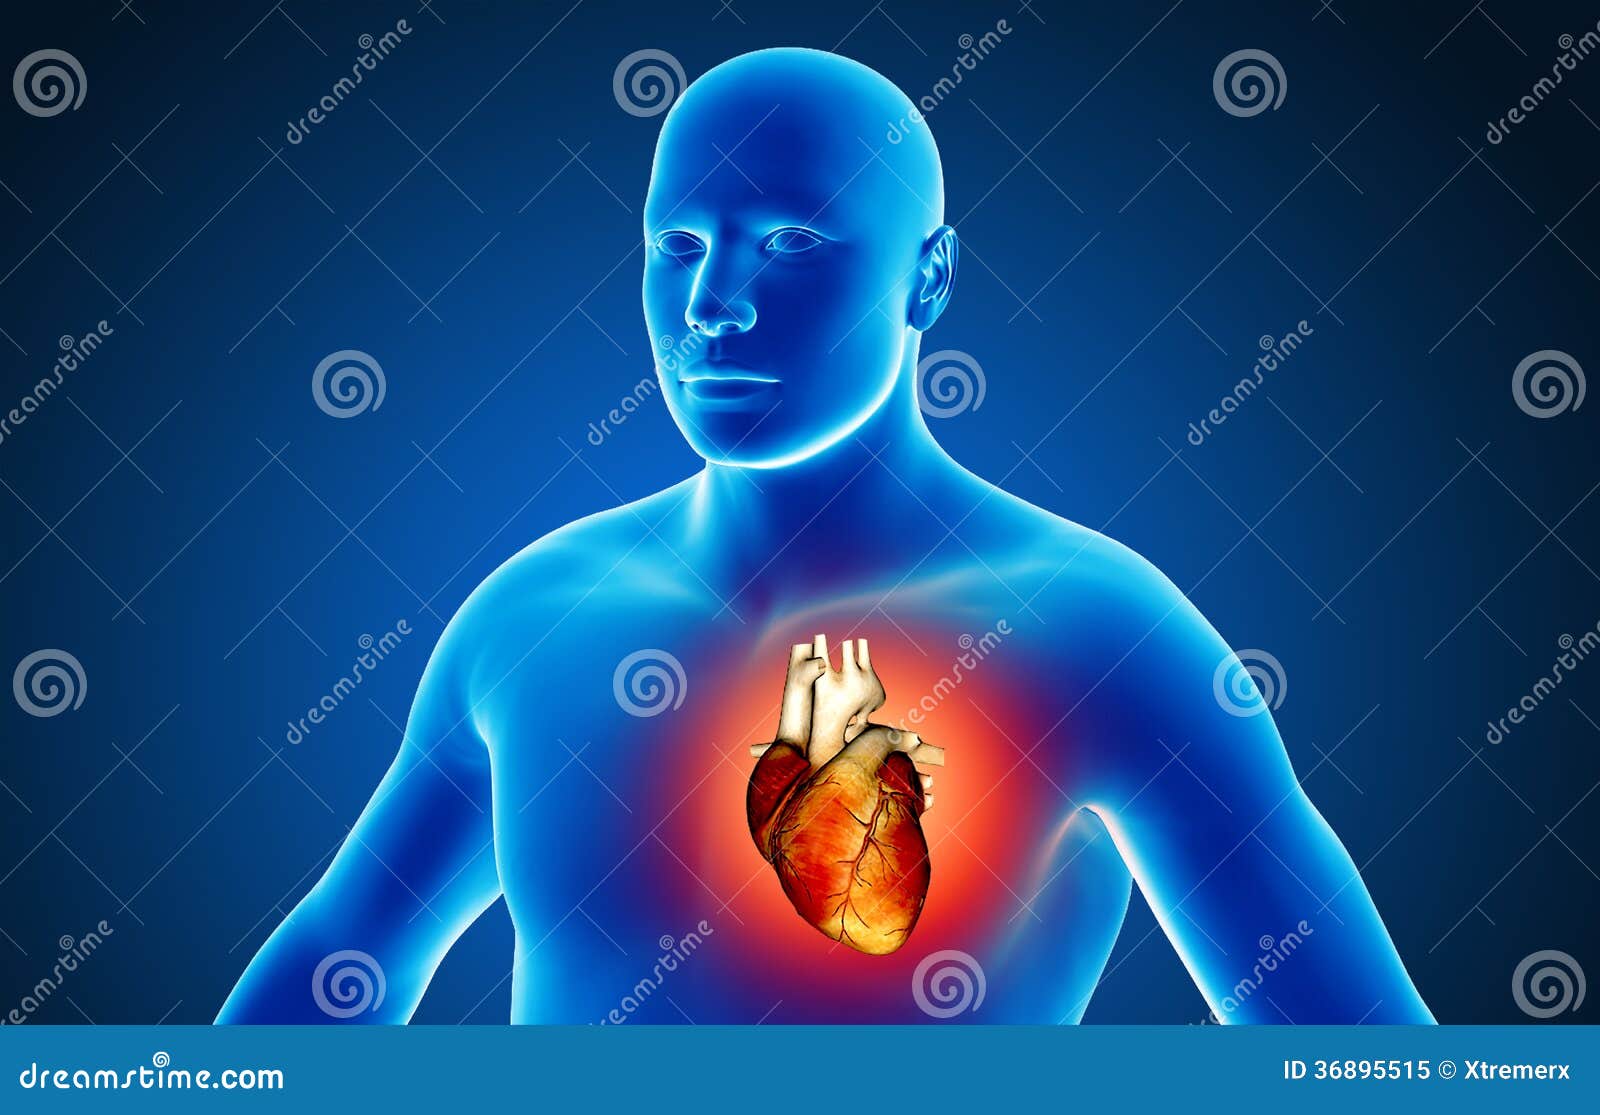 Human organs stock illustration. Illustration of biology - 36895515